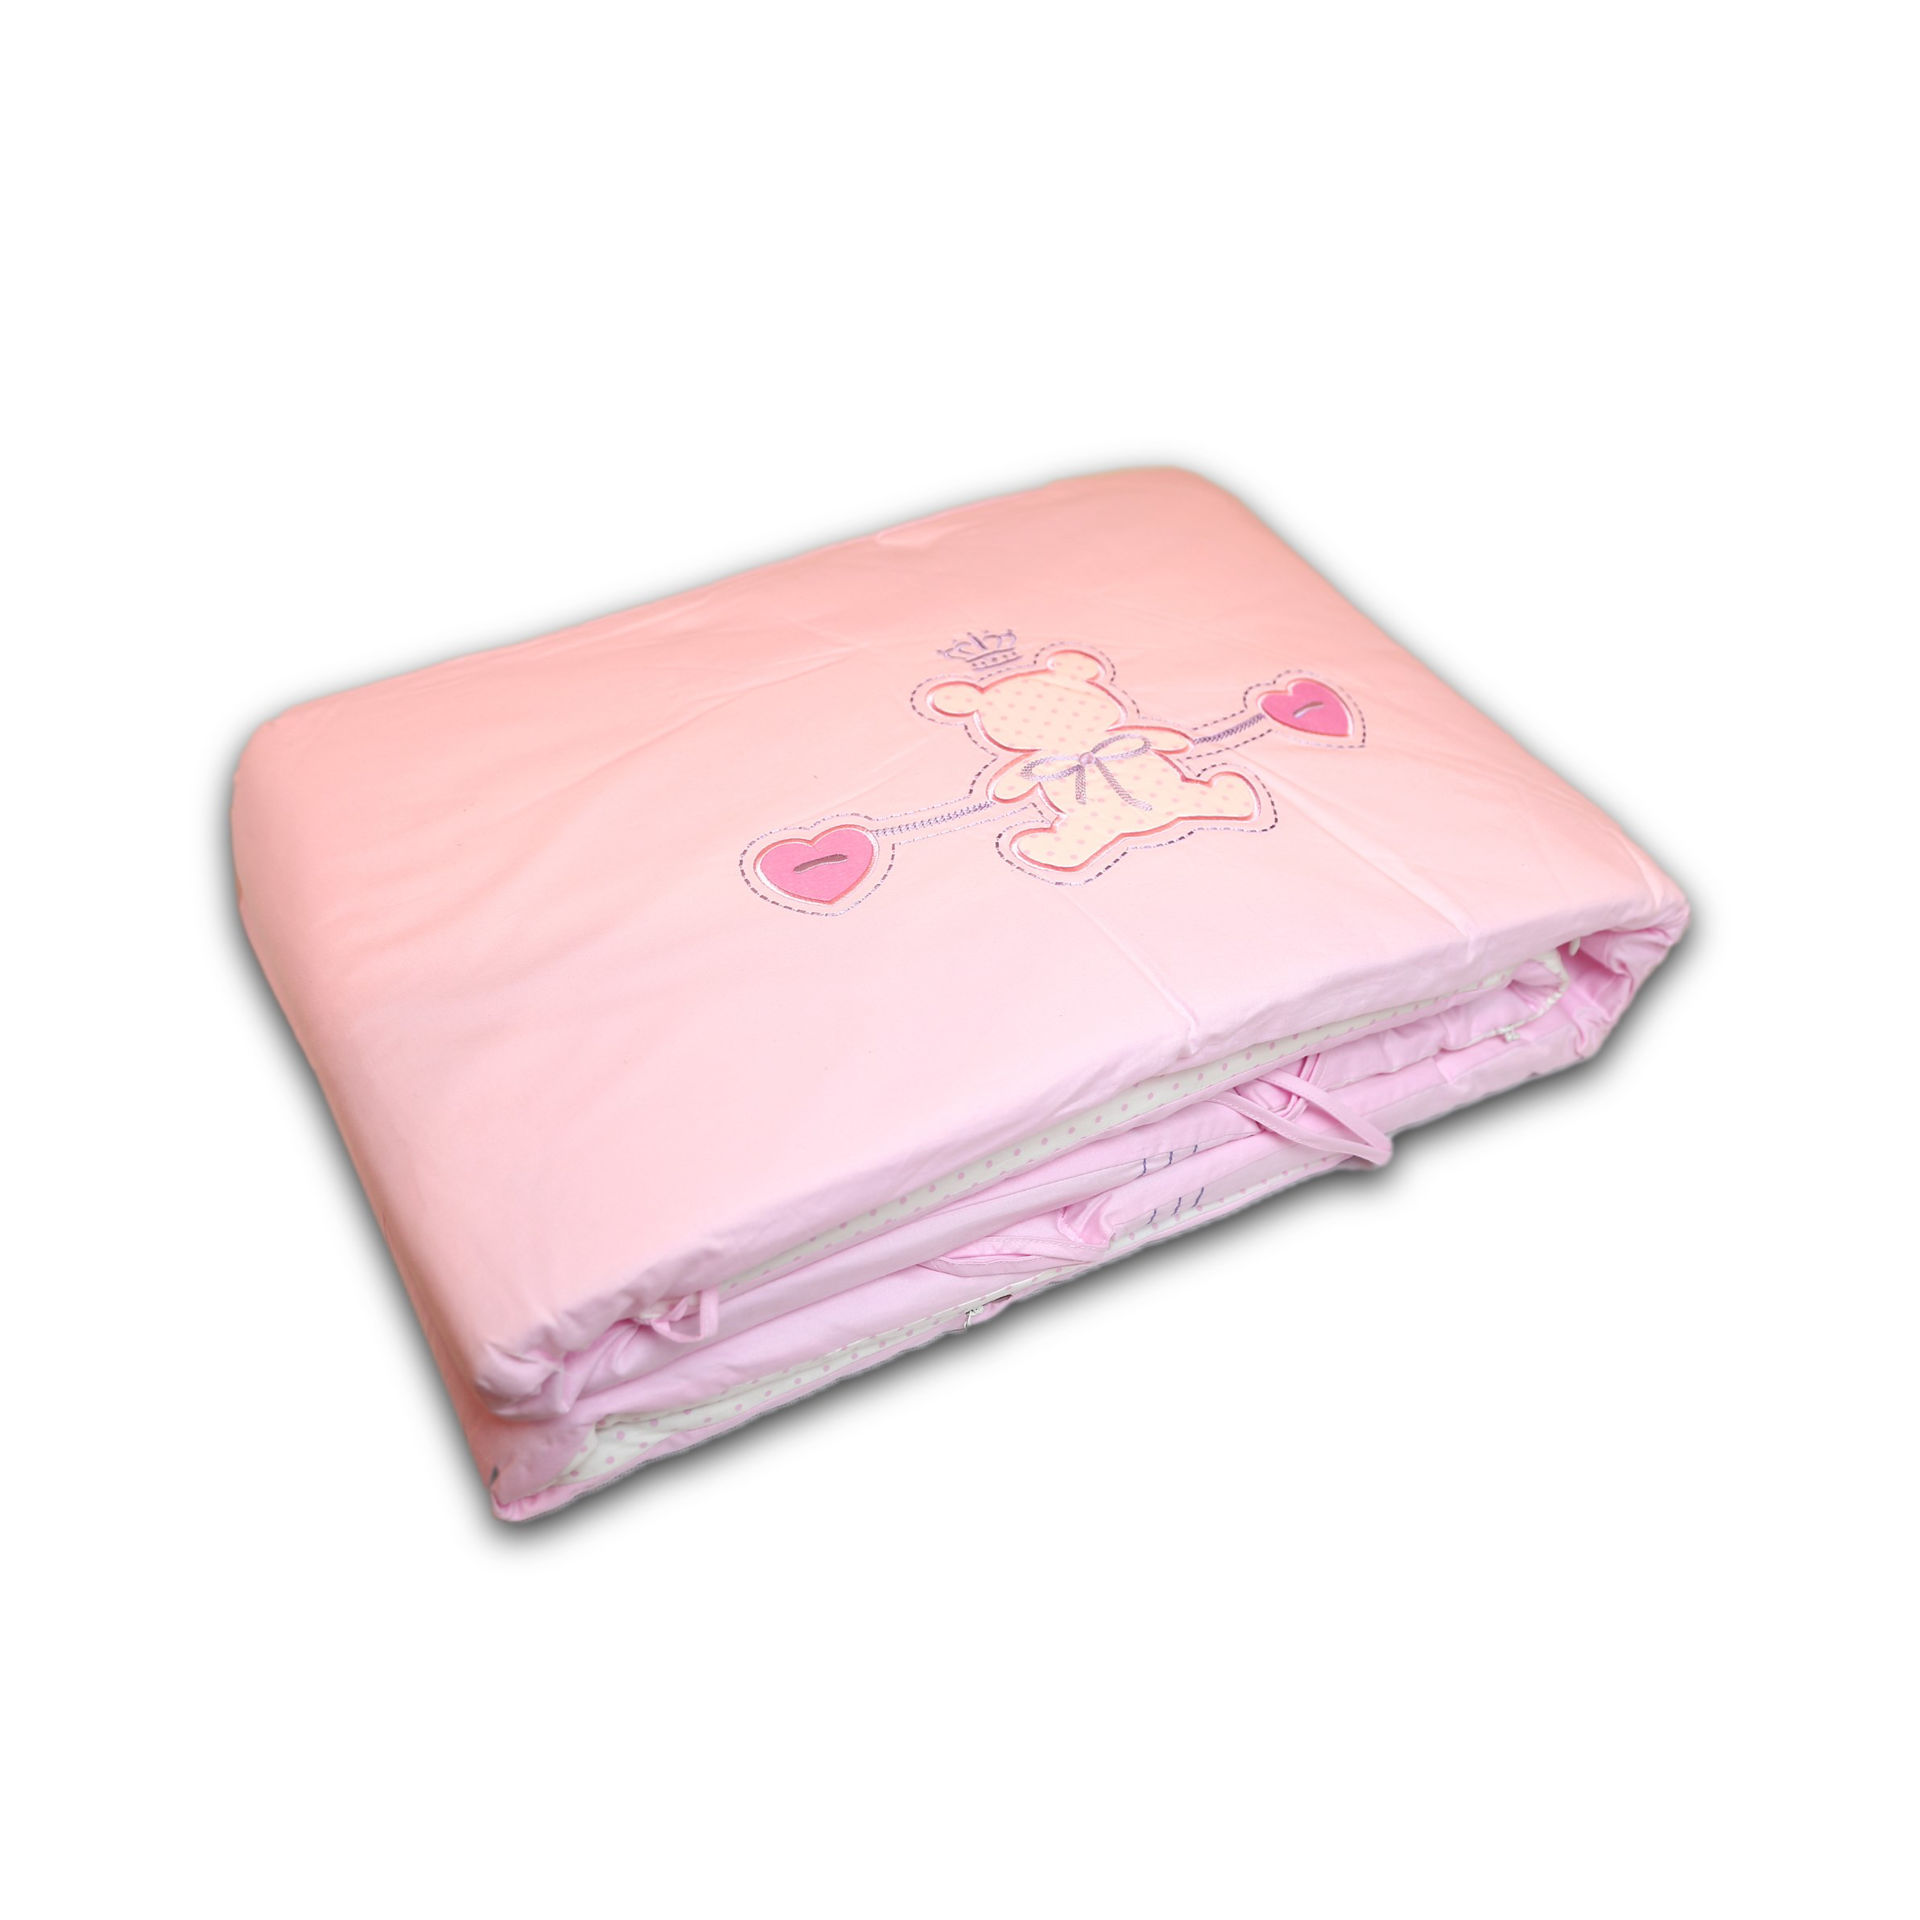 سرویس لحاف نوزادی 7 تکه کازابل طرح بیر Casabel Baby 7pcs CS Pink Bear Bedding Set